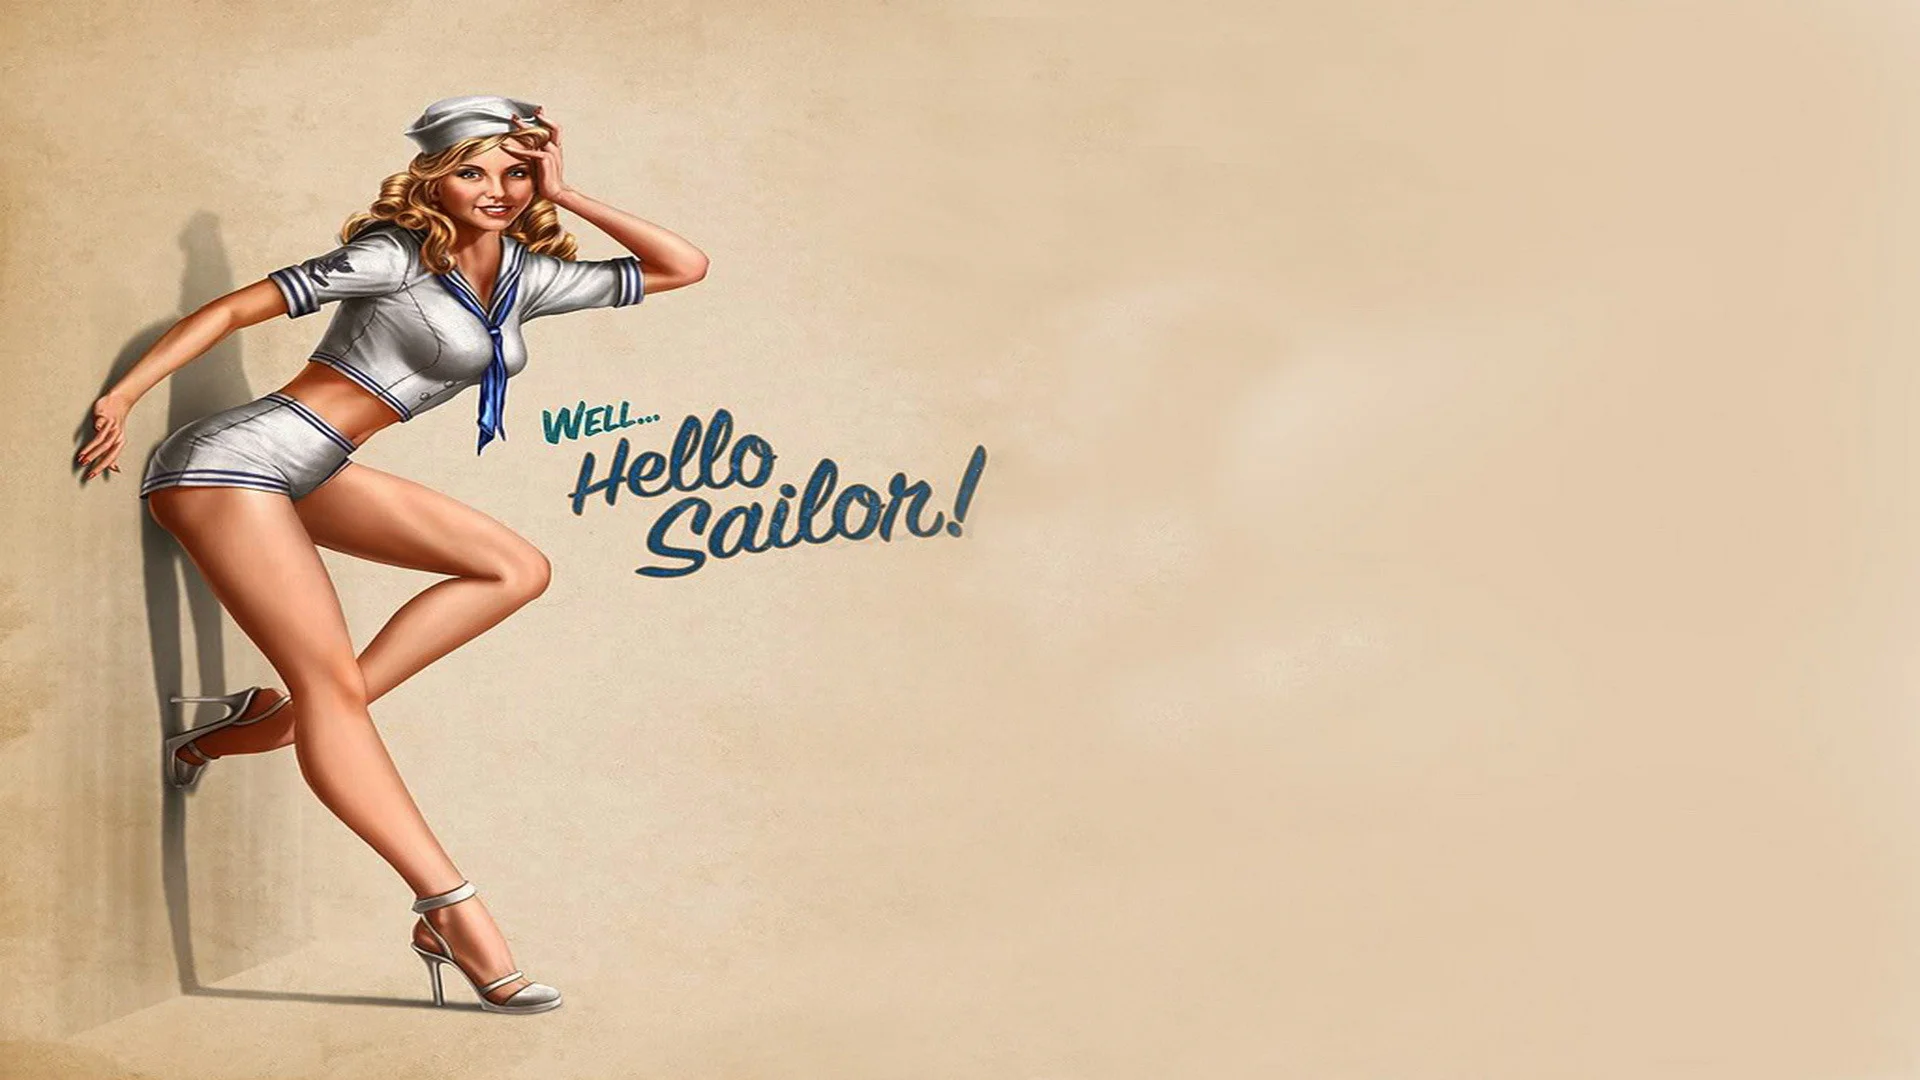 Pin Up Girls Wallpapers, Images, HD, Photos, pinup girls sailor